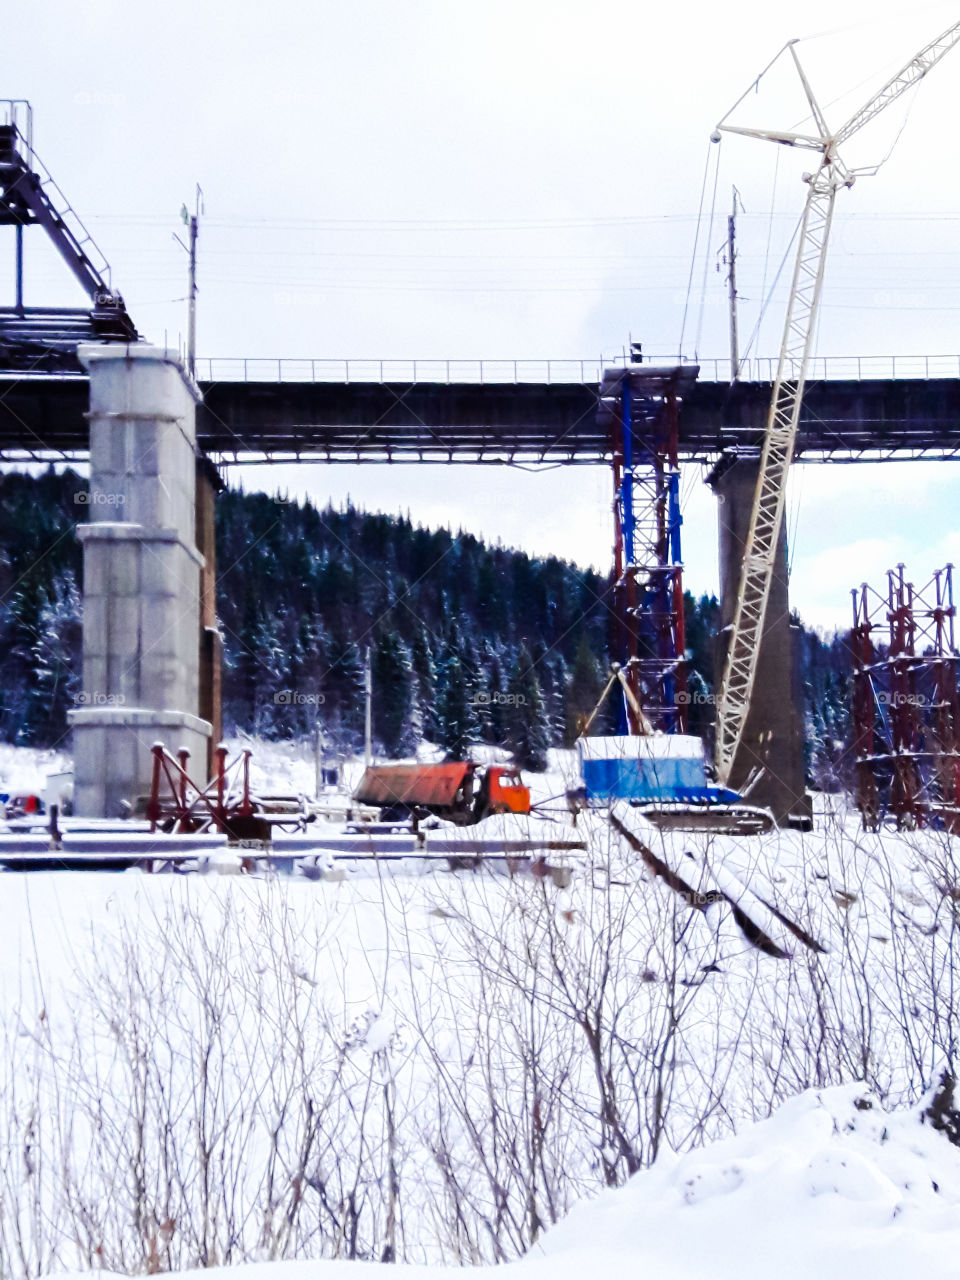 Мост река небо снег кран строительный автомобиль